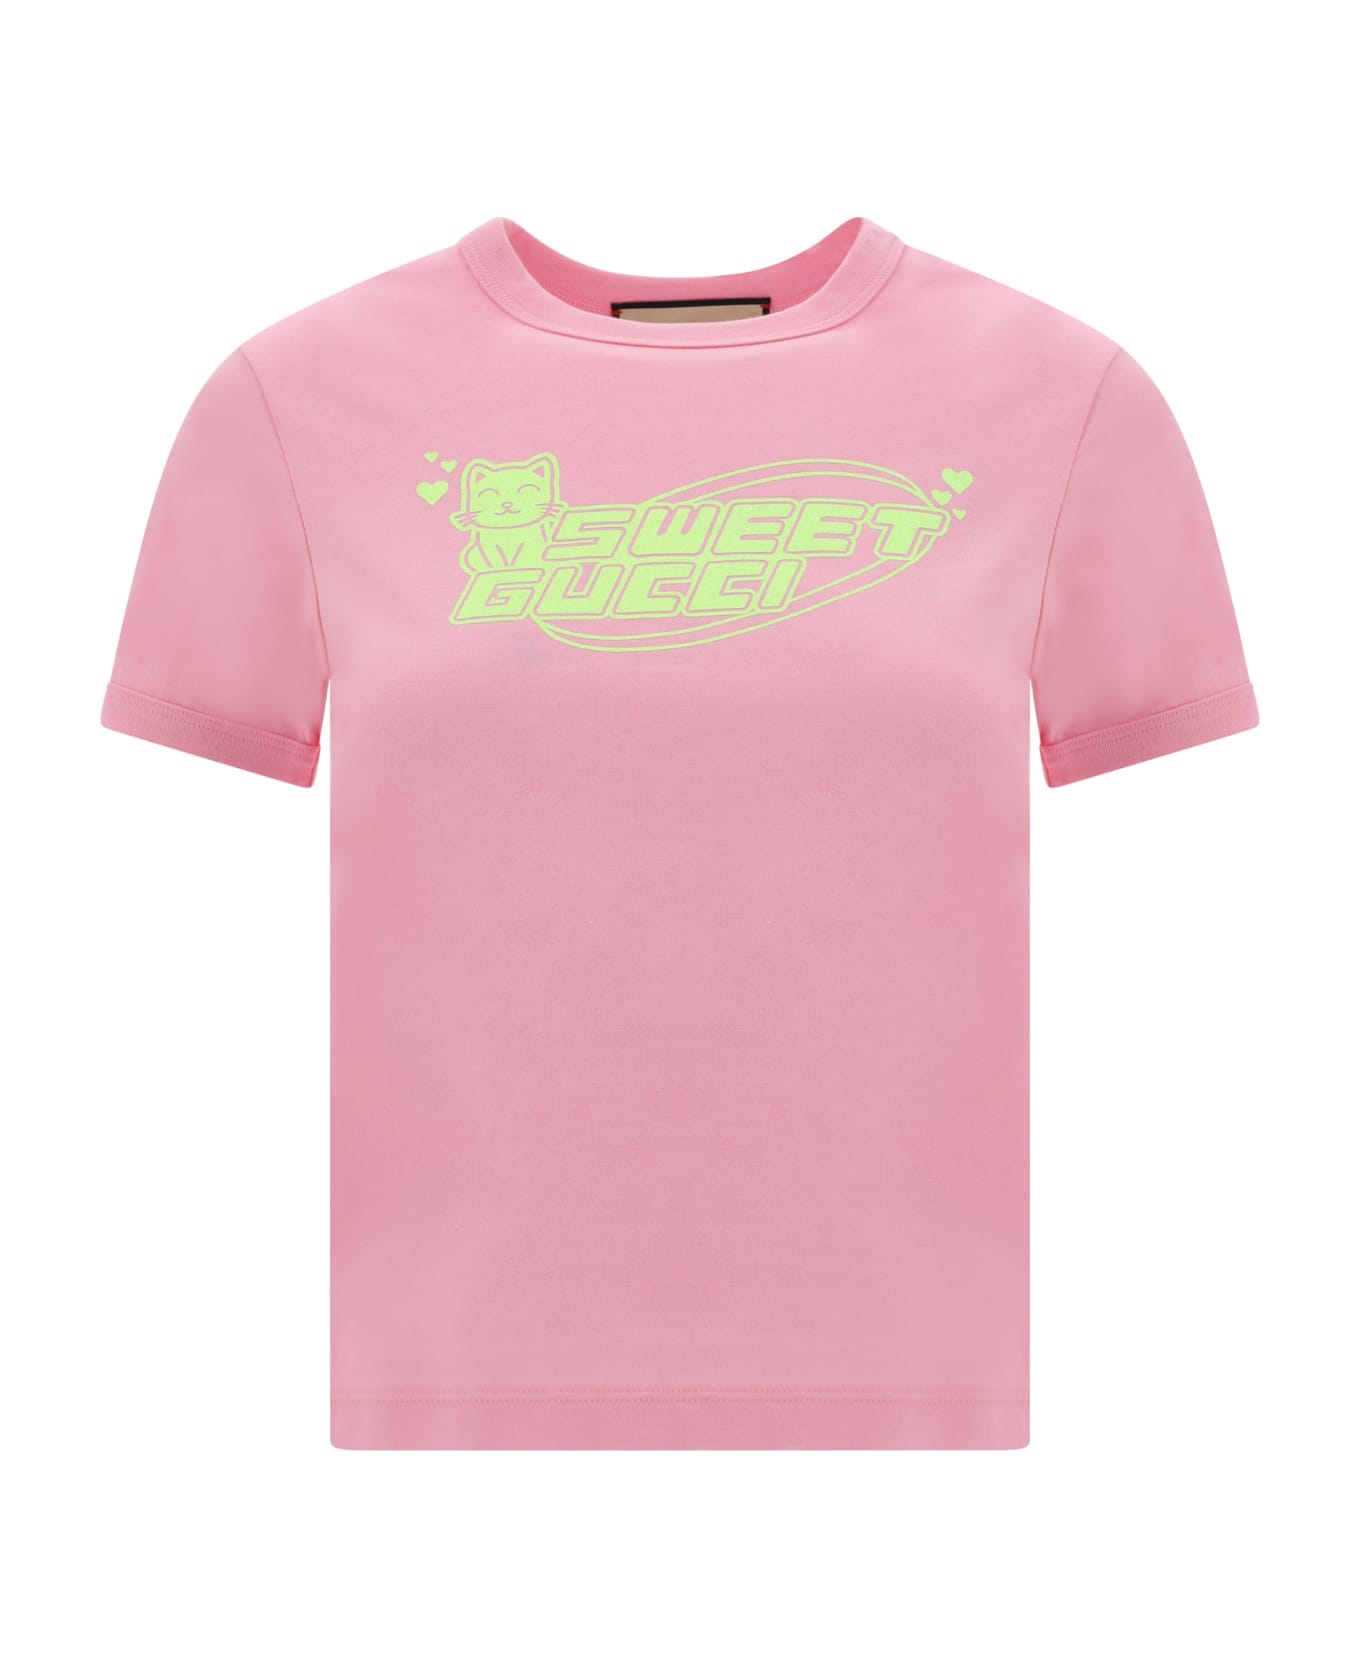 Gucci T-shirt - Sugar Pink/mc